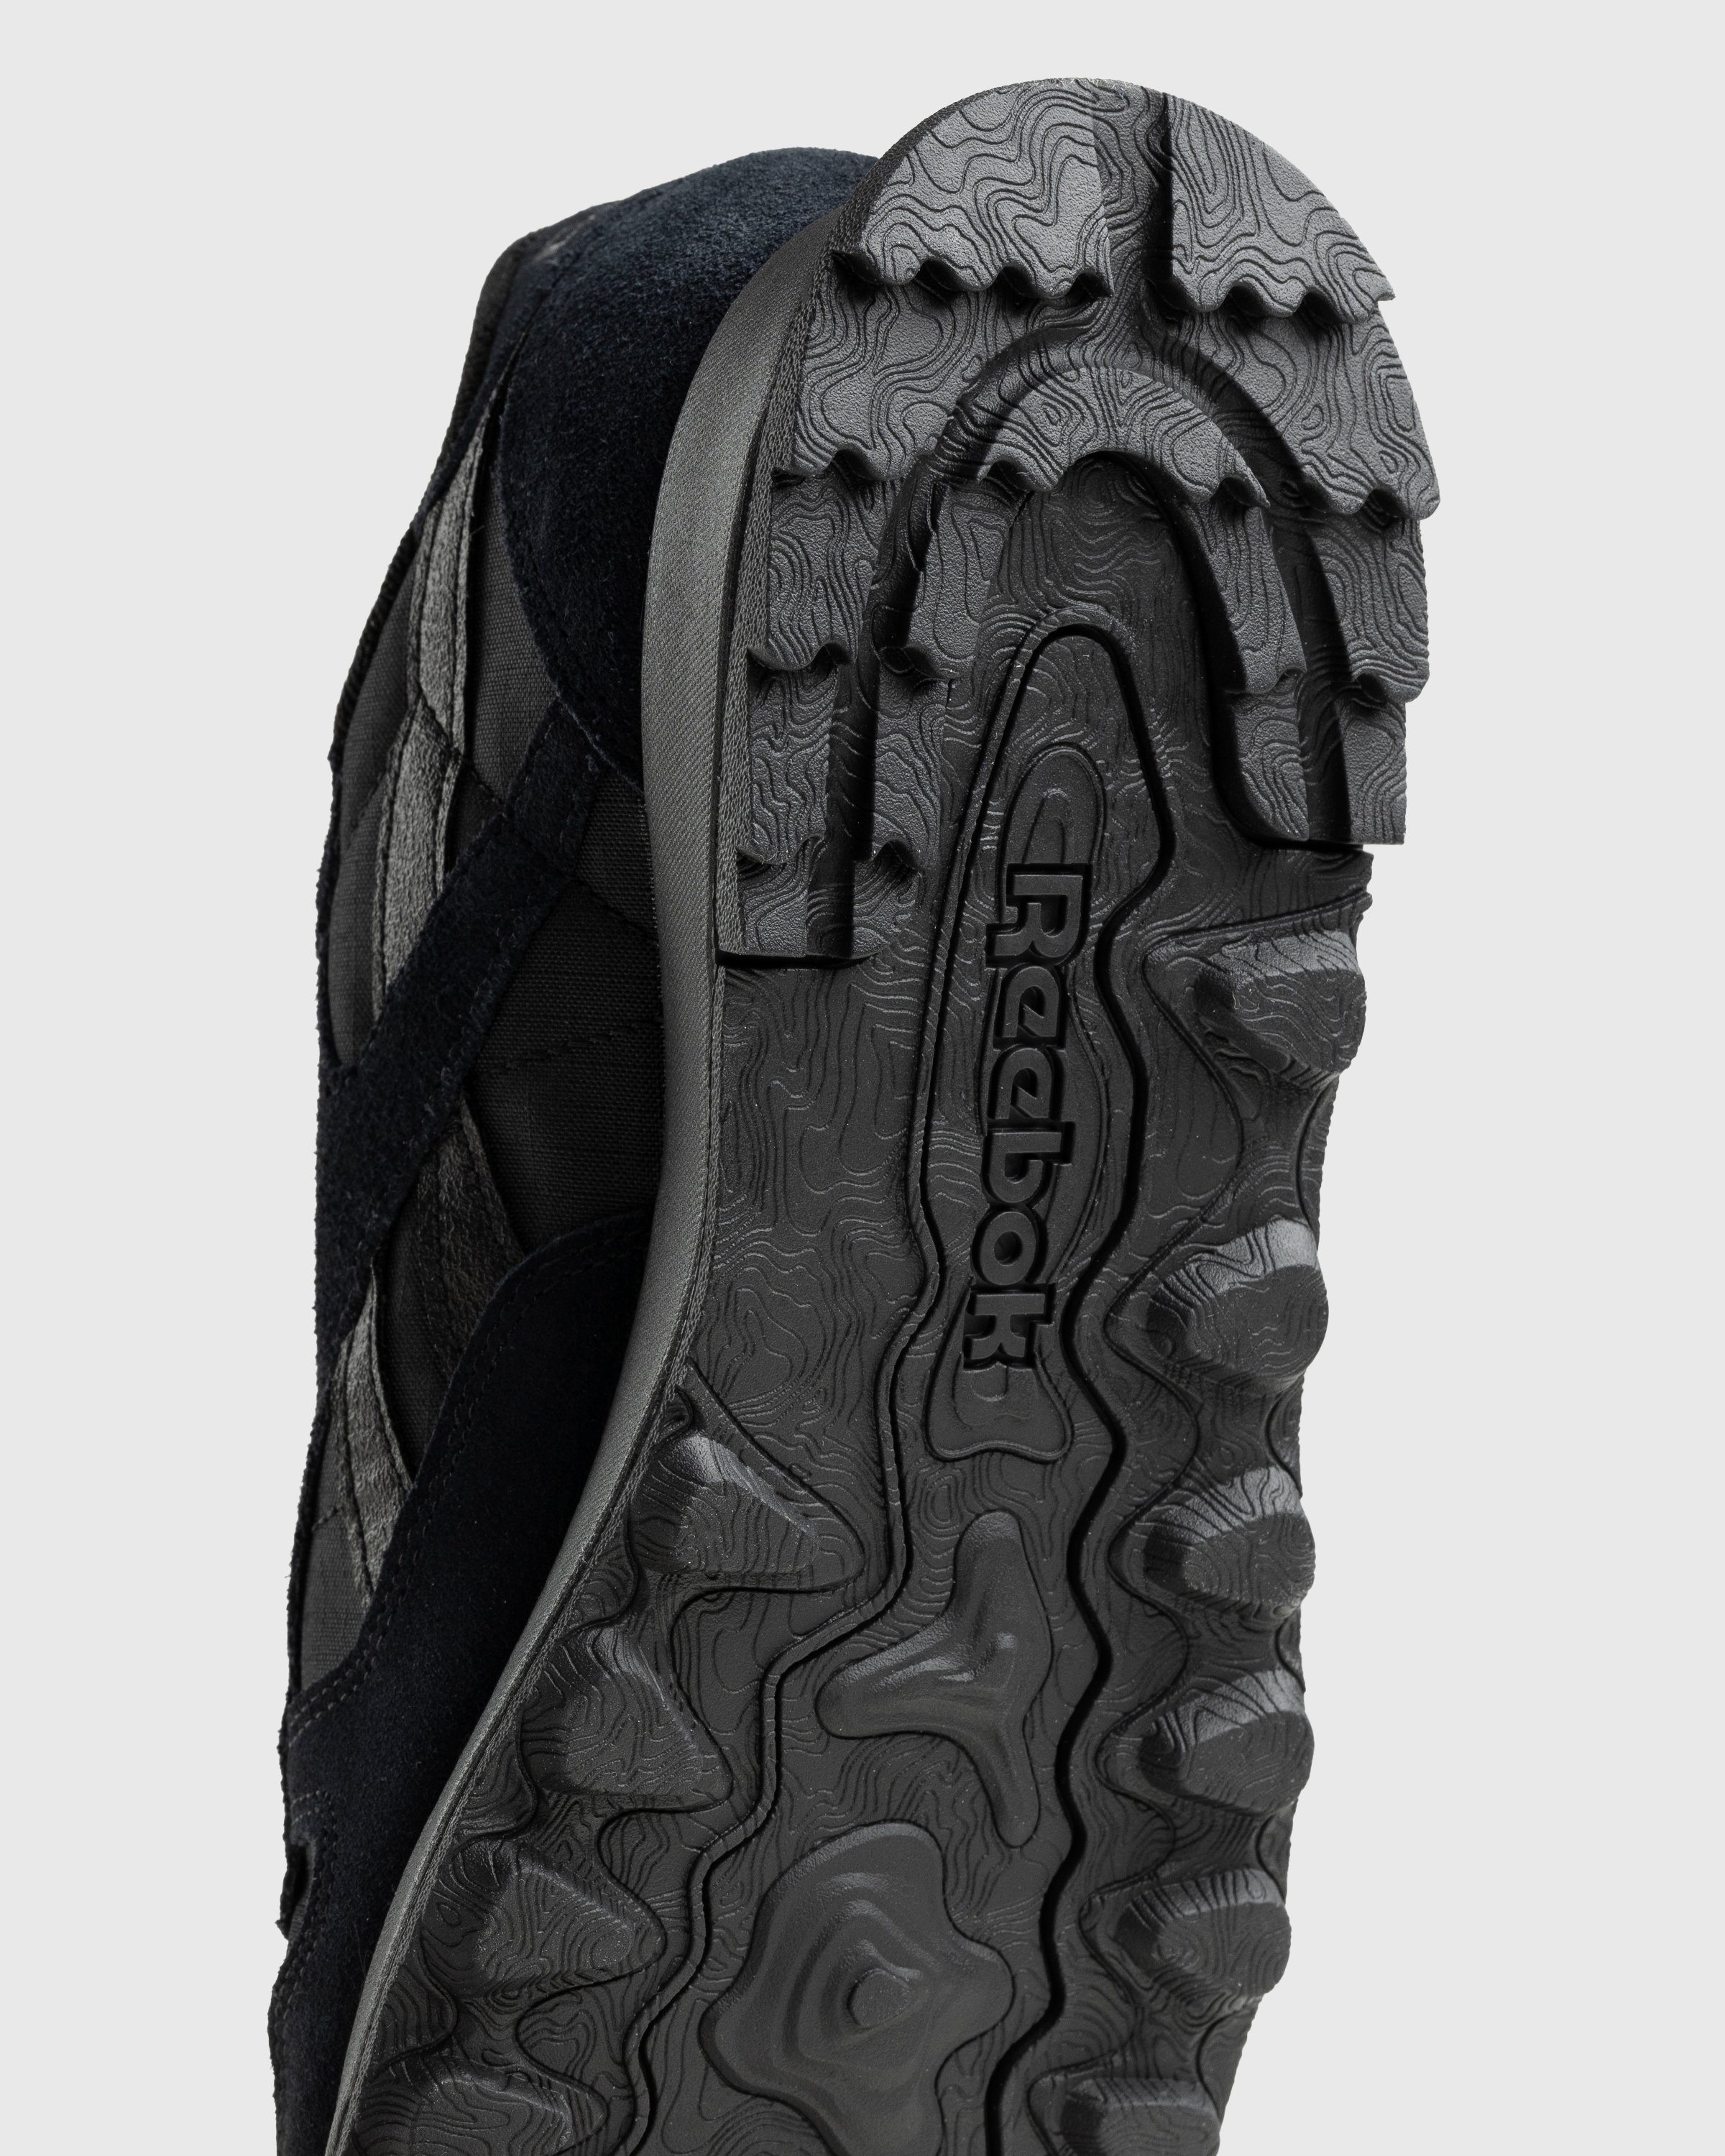 Reebok - LX2200 Black - Footwear - Black - Image 6